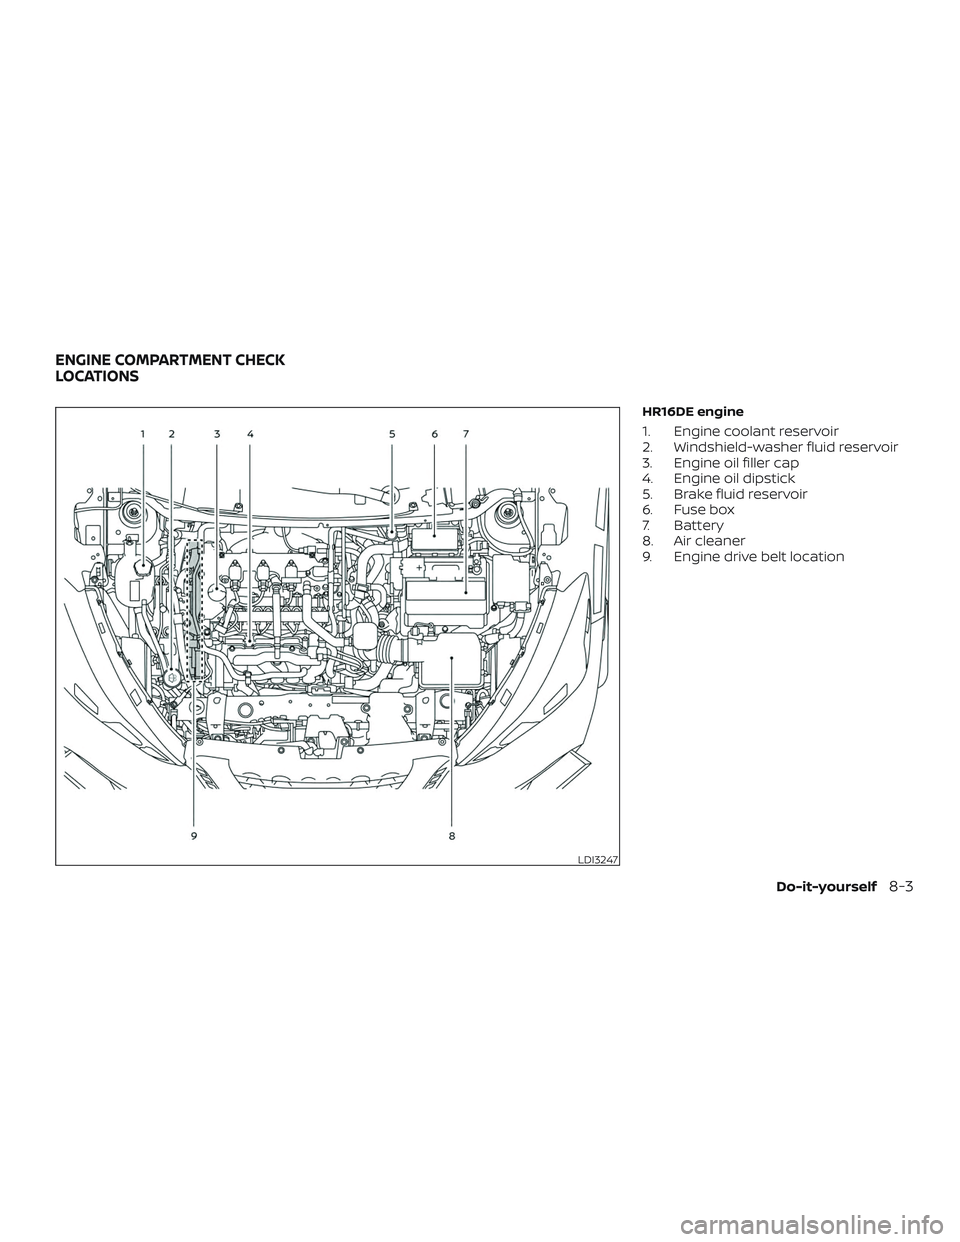 NISSAN KICKS 2019  Owner´s Manual HR16DE engine
1. Engine coolant reservoir
2. Windshield-washer fluid reservoir
3. Engine oil filler cap
4. Engine oil dipstick
5. Brake fluid reservoir
6. Fuse box
7. Battery
8. Air cleaner
9. Engine 